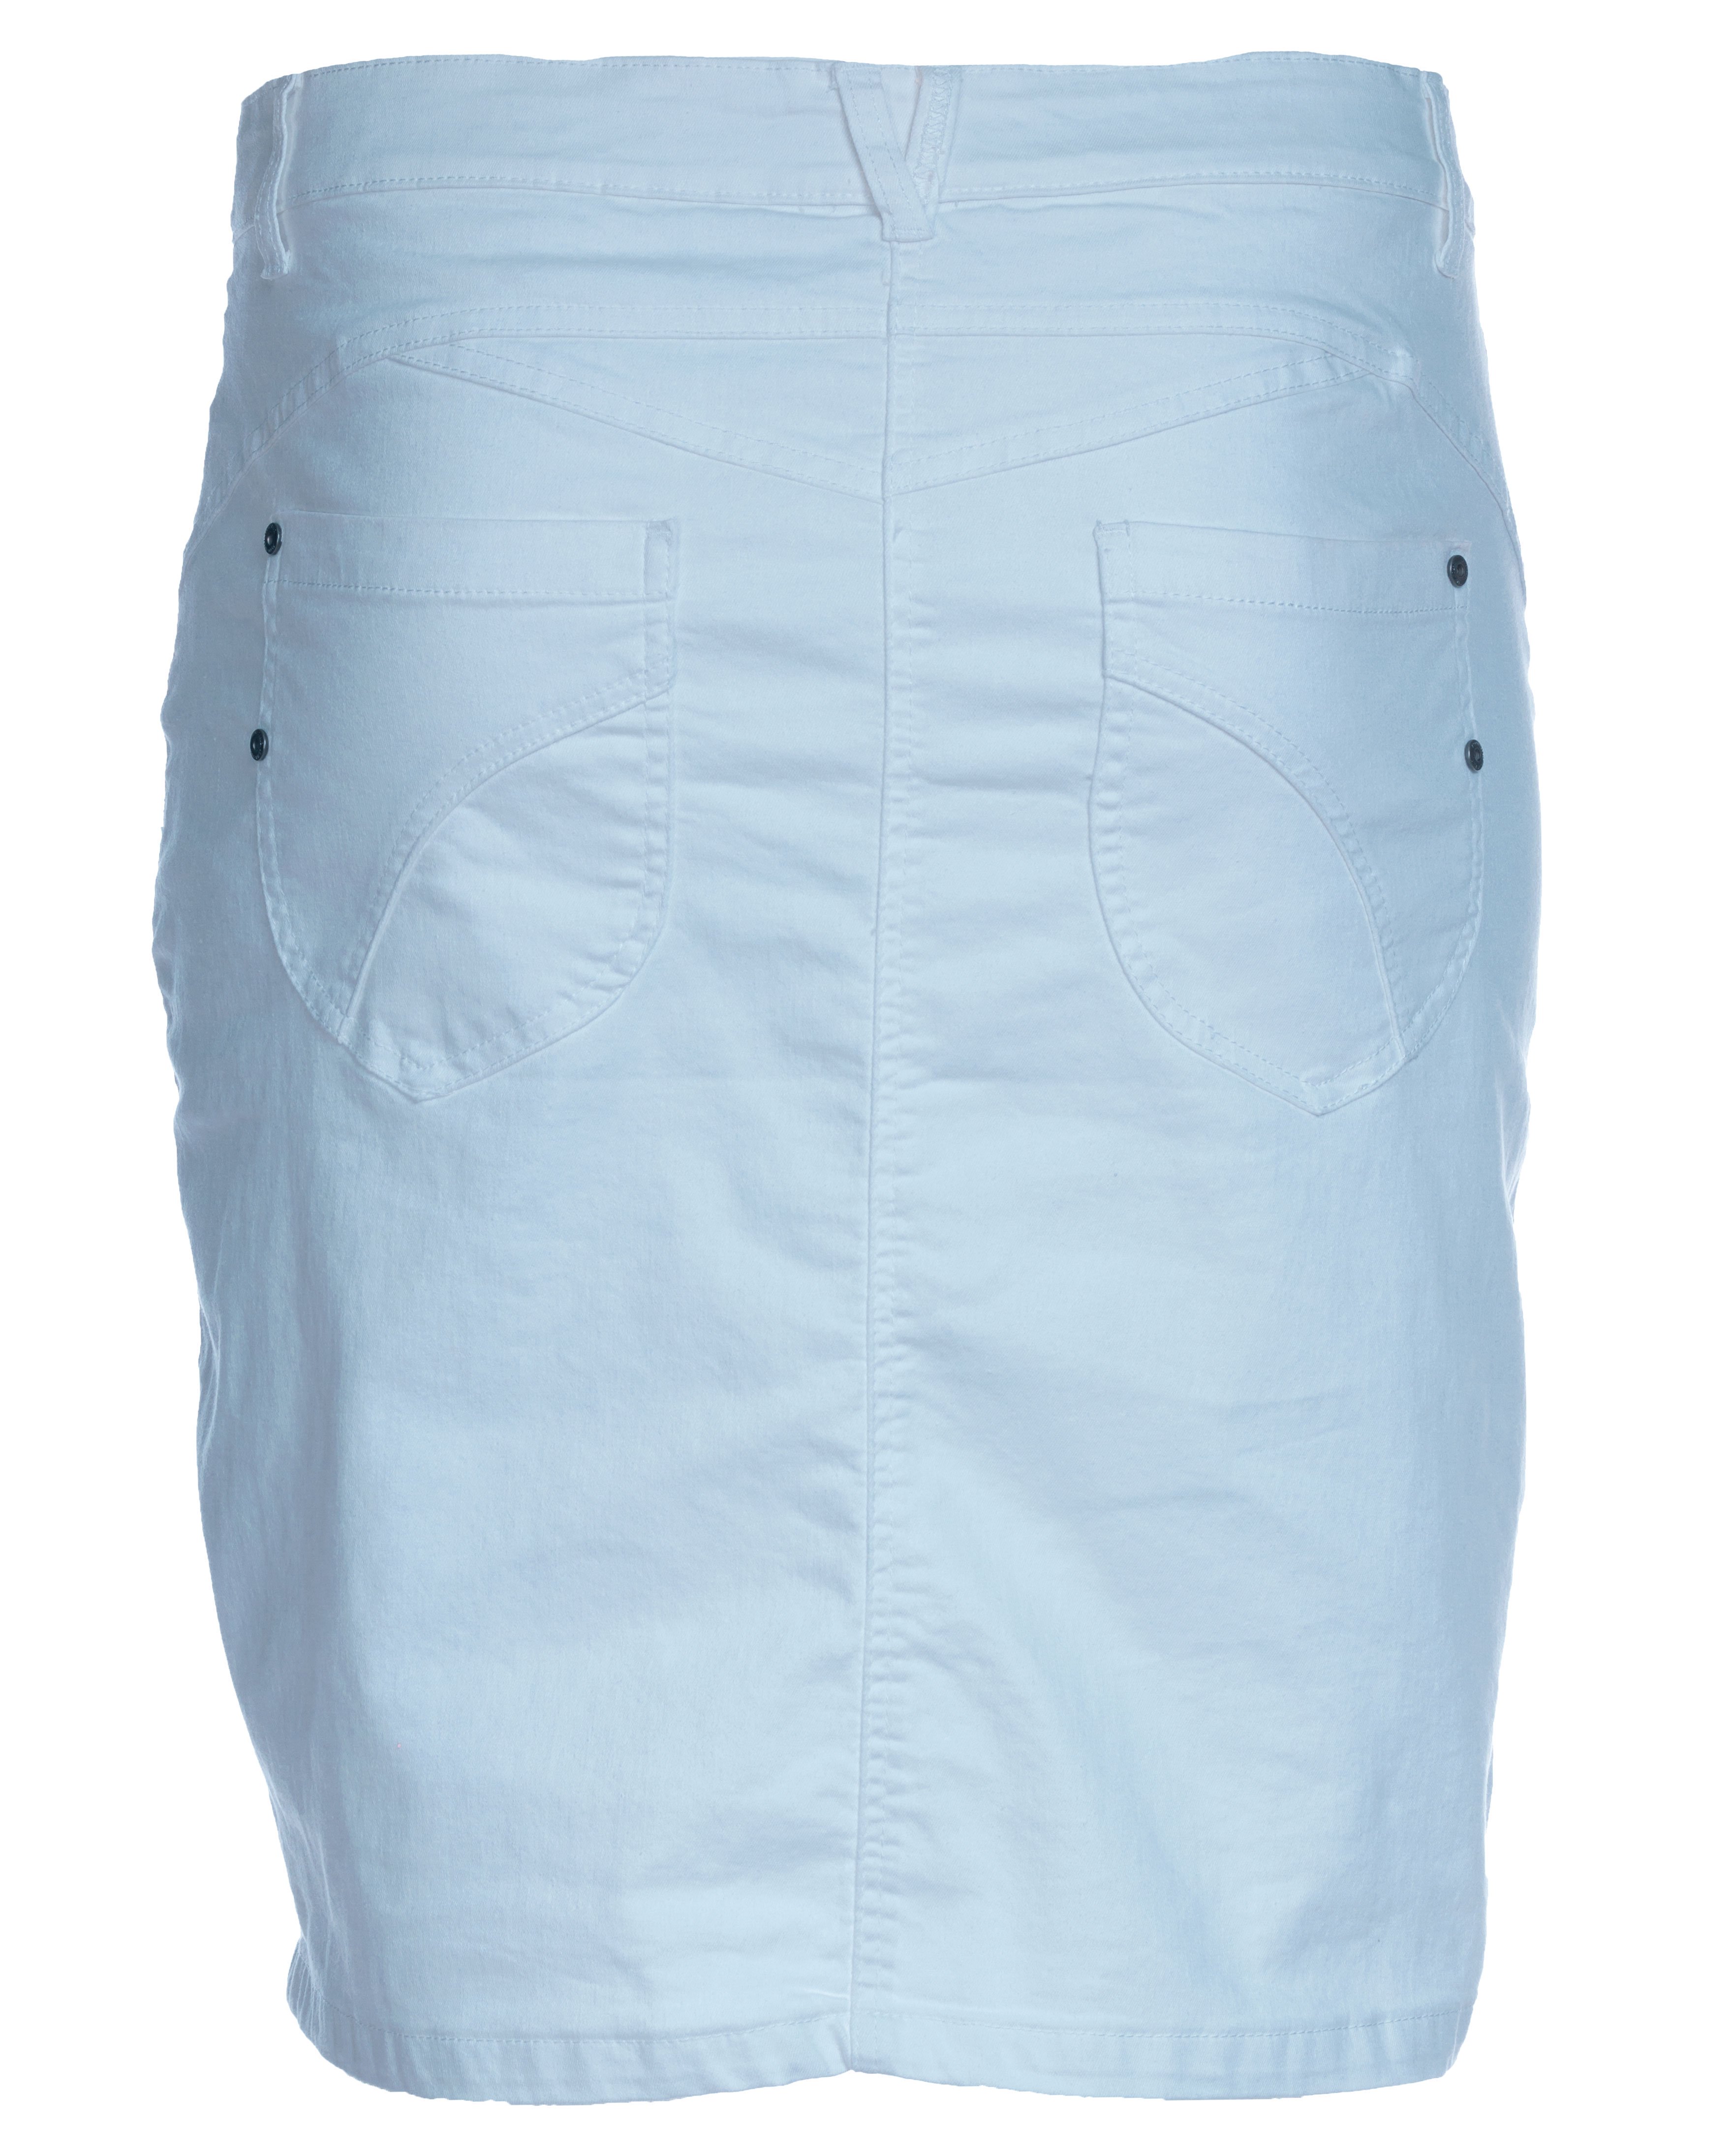 Lyseblå stræk nederdel med skånebukser fra Zhenzi